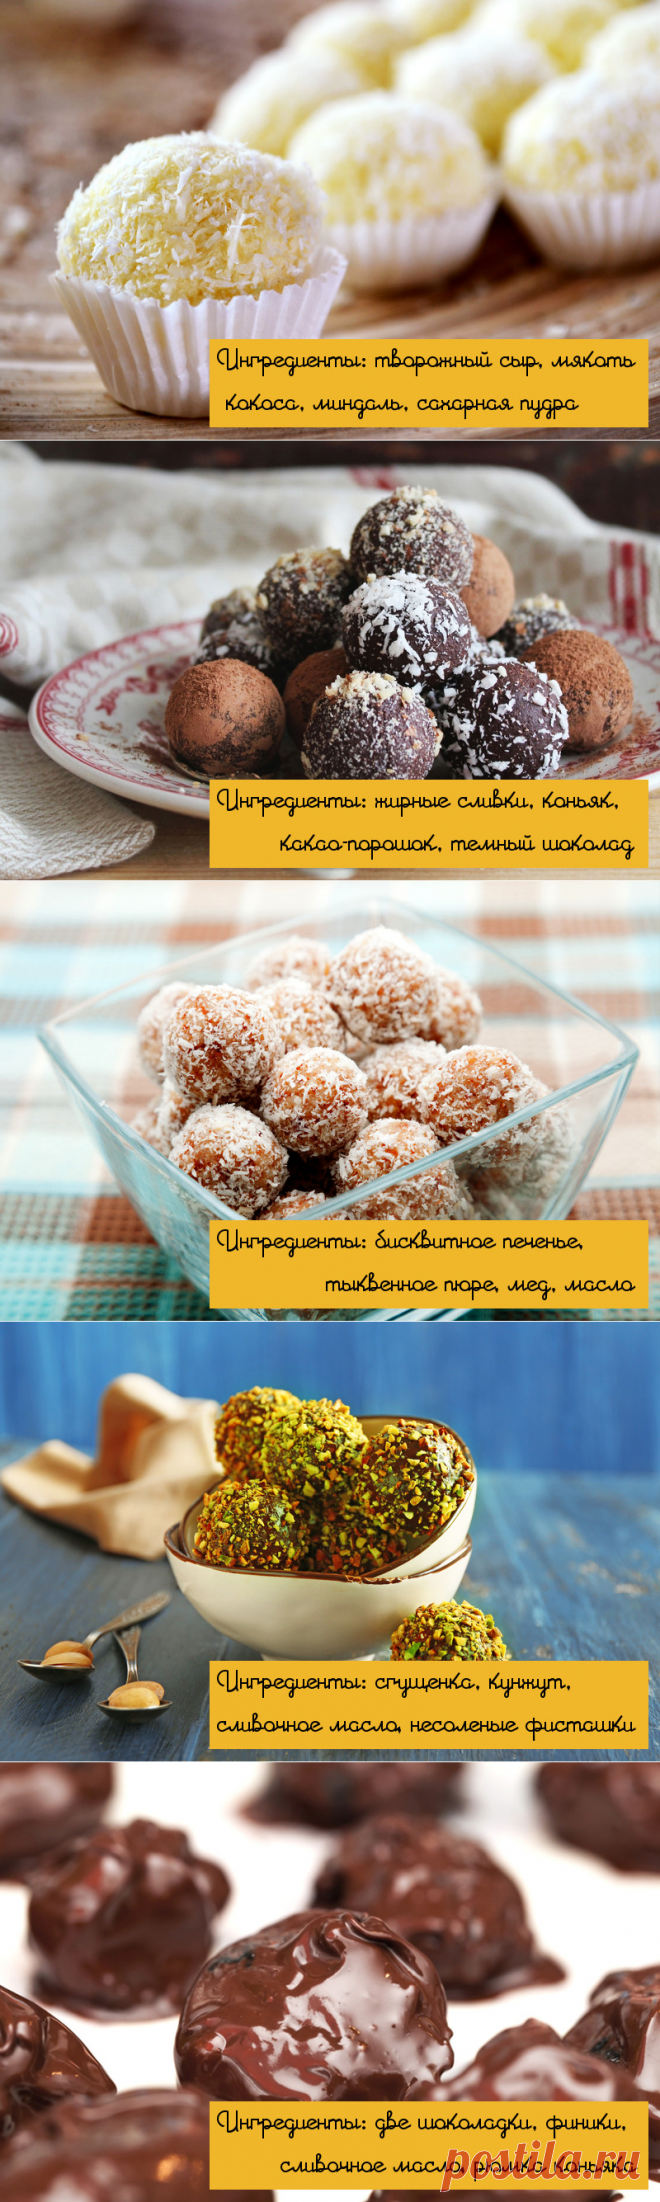 Сладкая жизнь: лучшие рецепты домашних конфет - Pics.ru